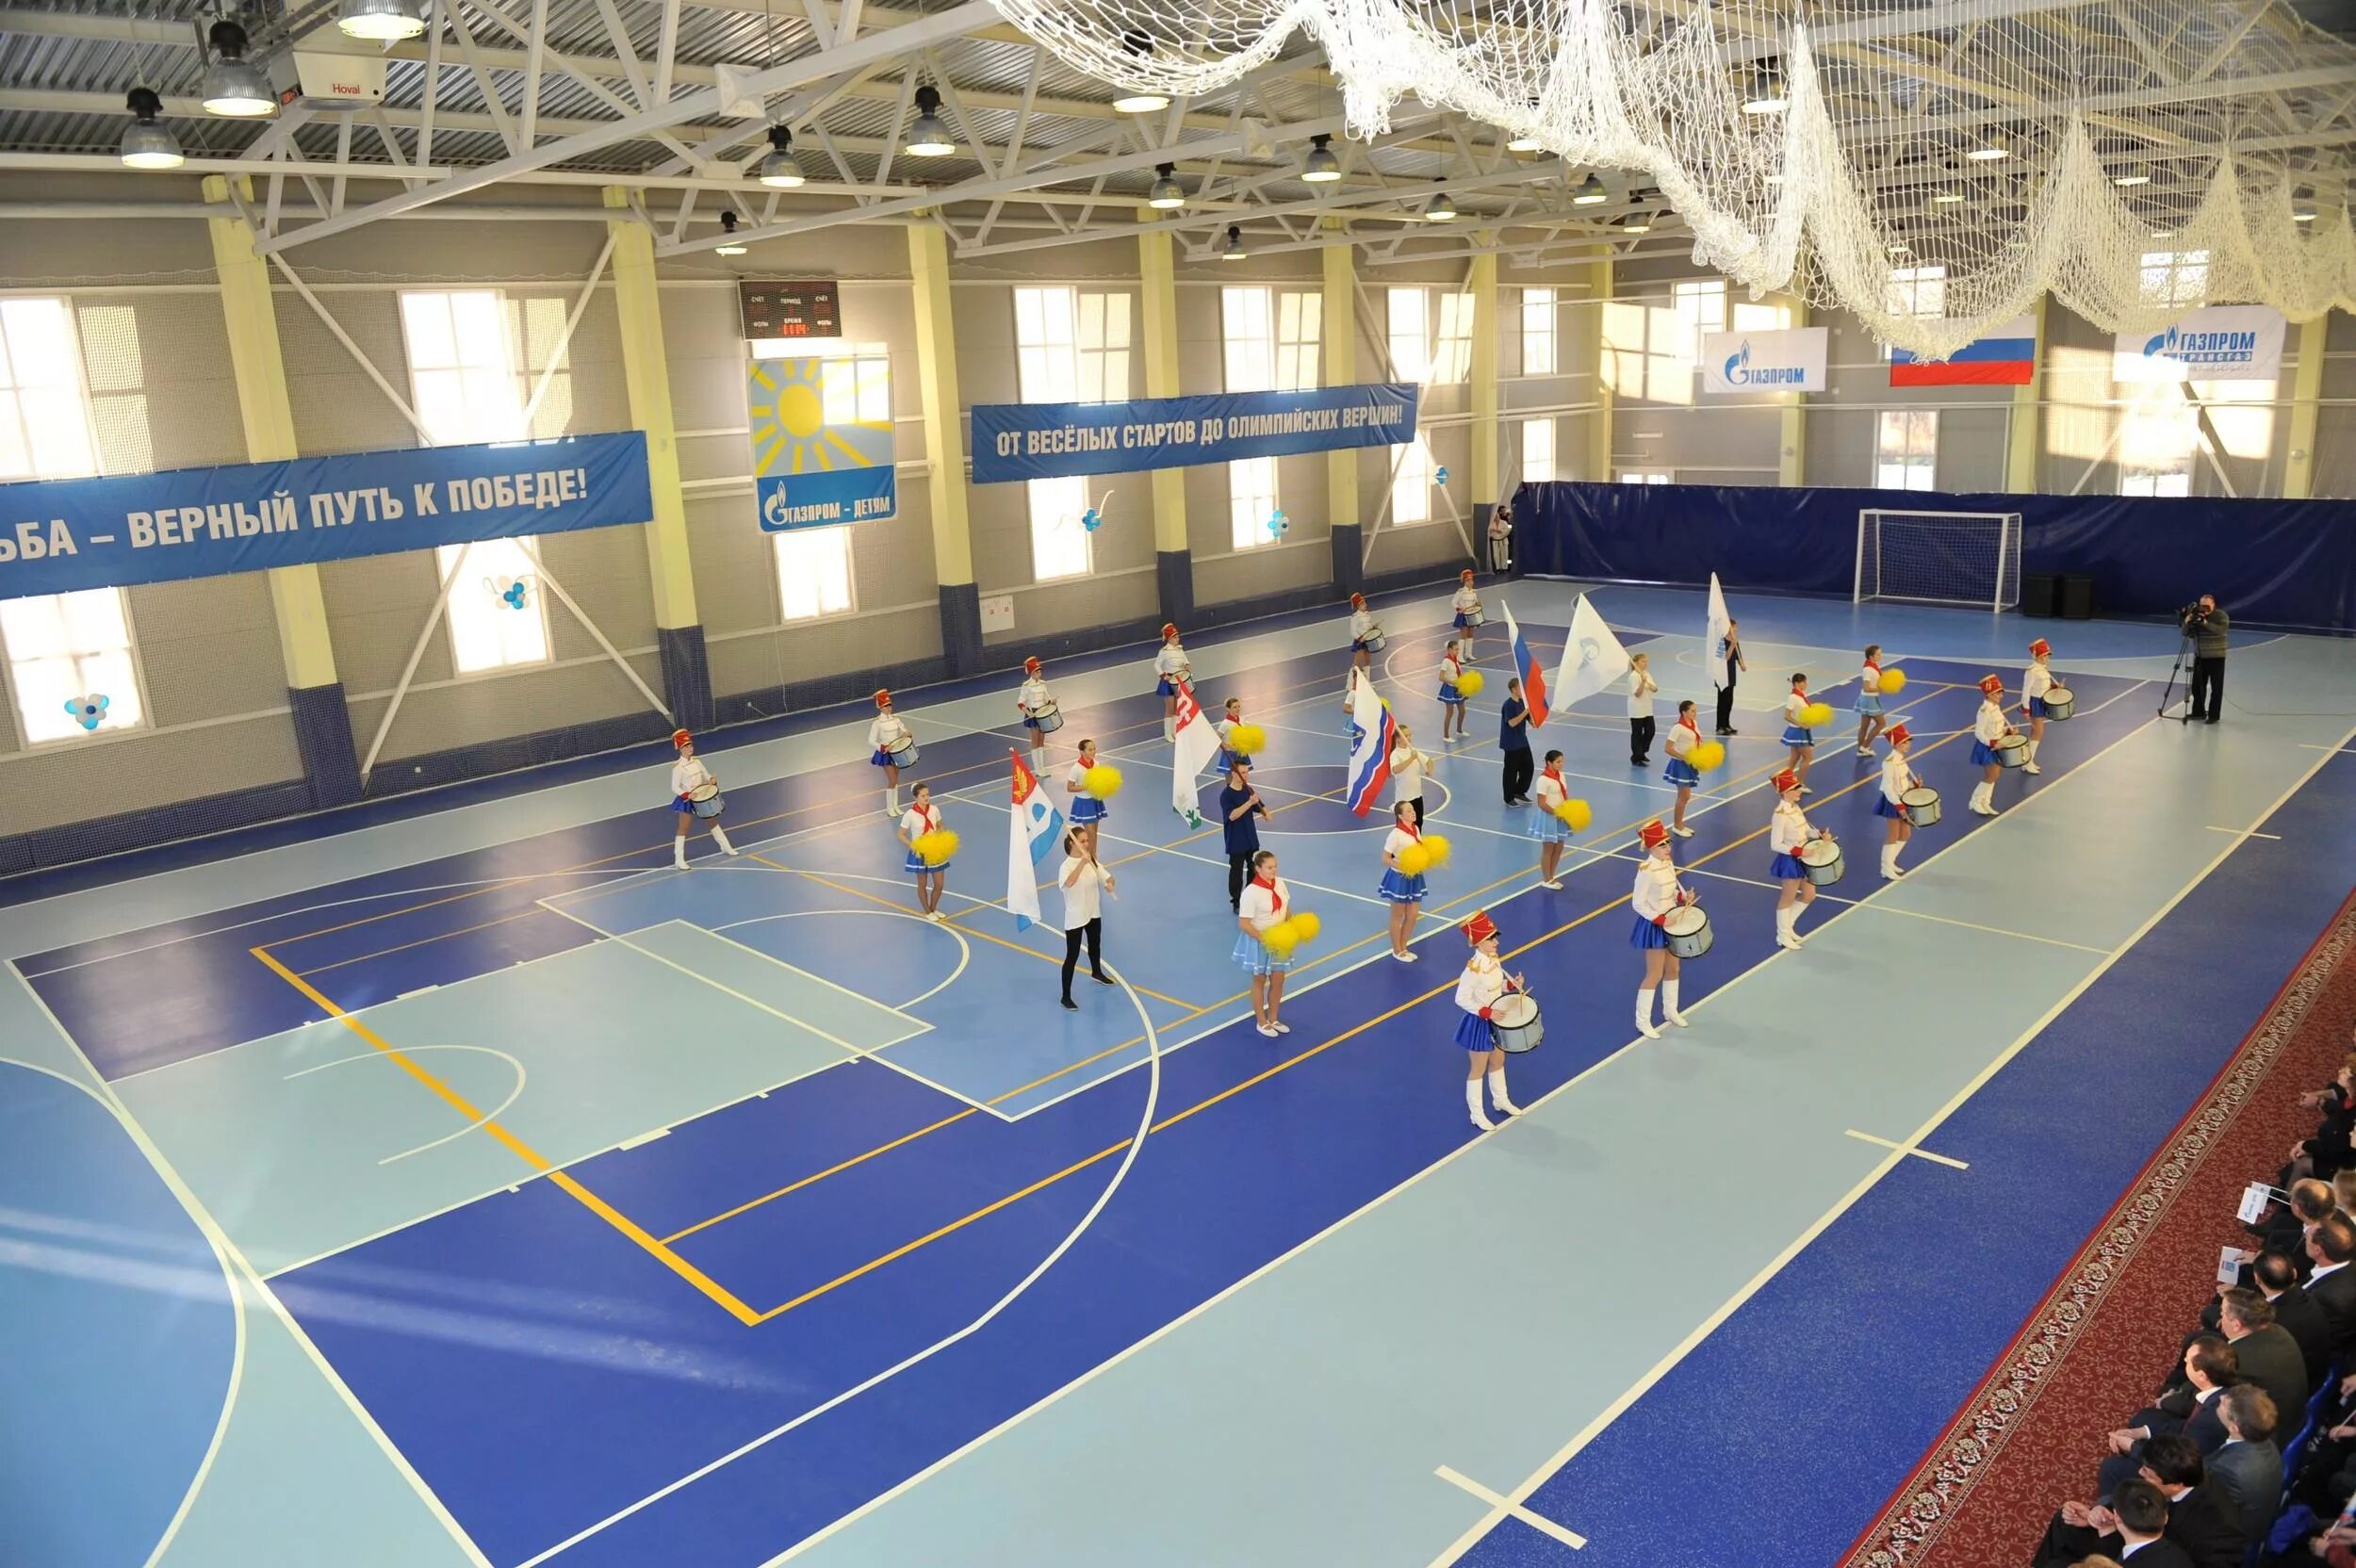 Спортивный центр. Спорткомплекс. Физкультурный комплекс. Физкультурно-спортивный комплекс в Москве. Сколько спортивных центров